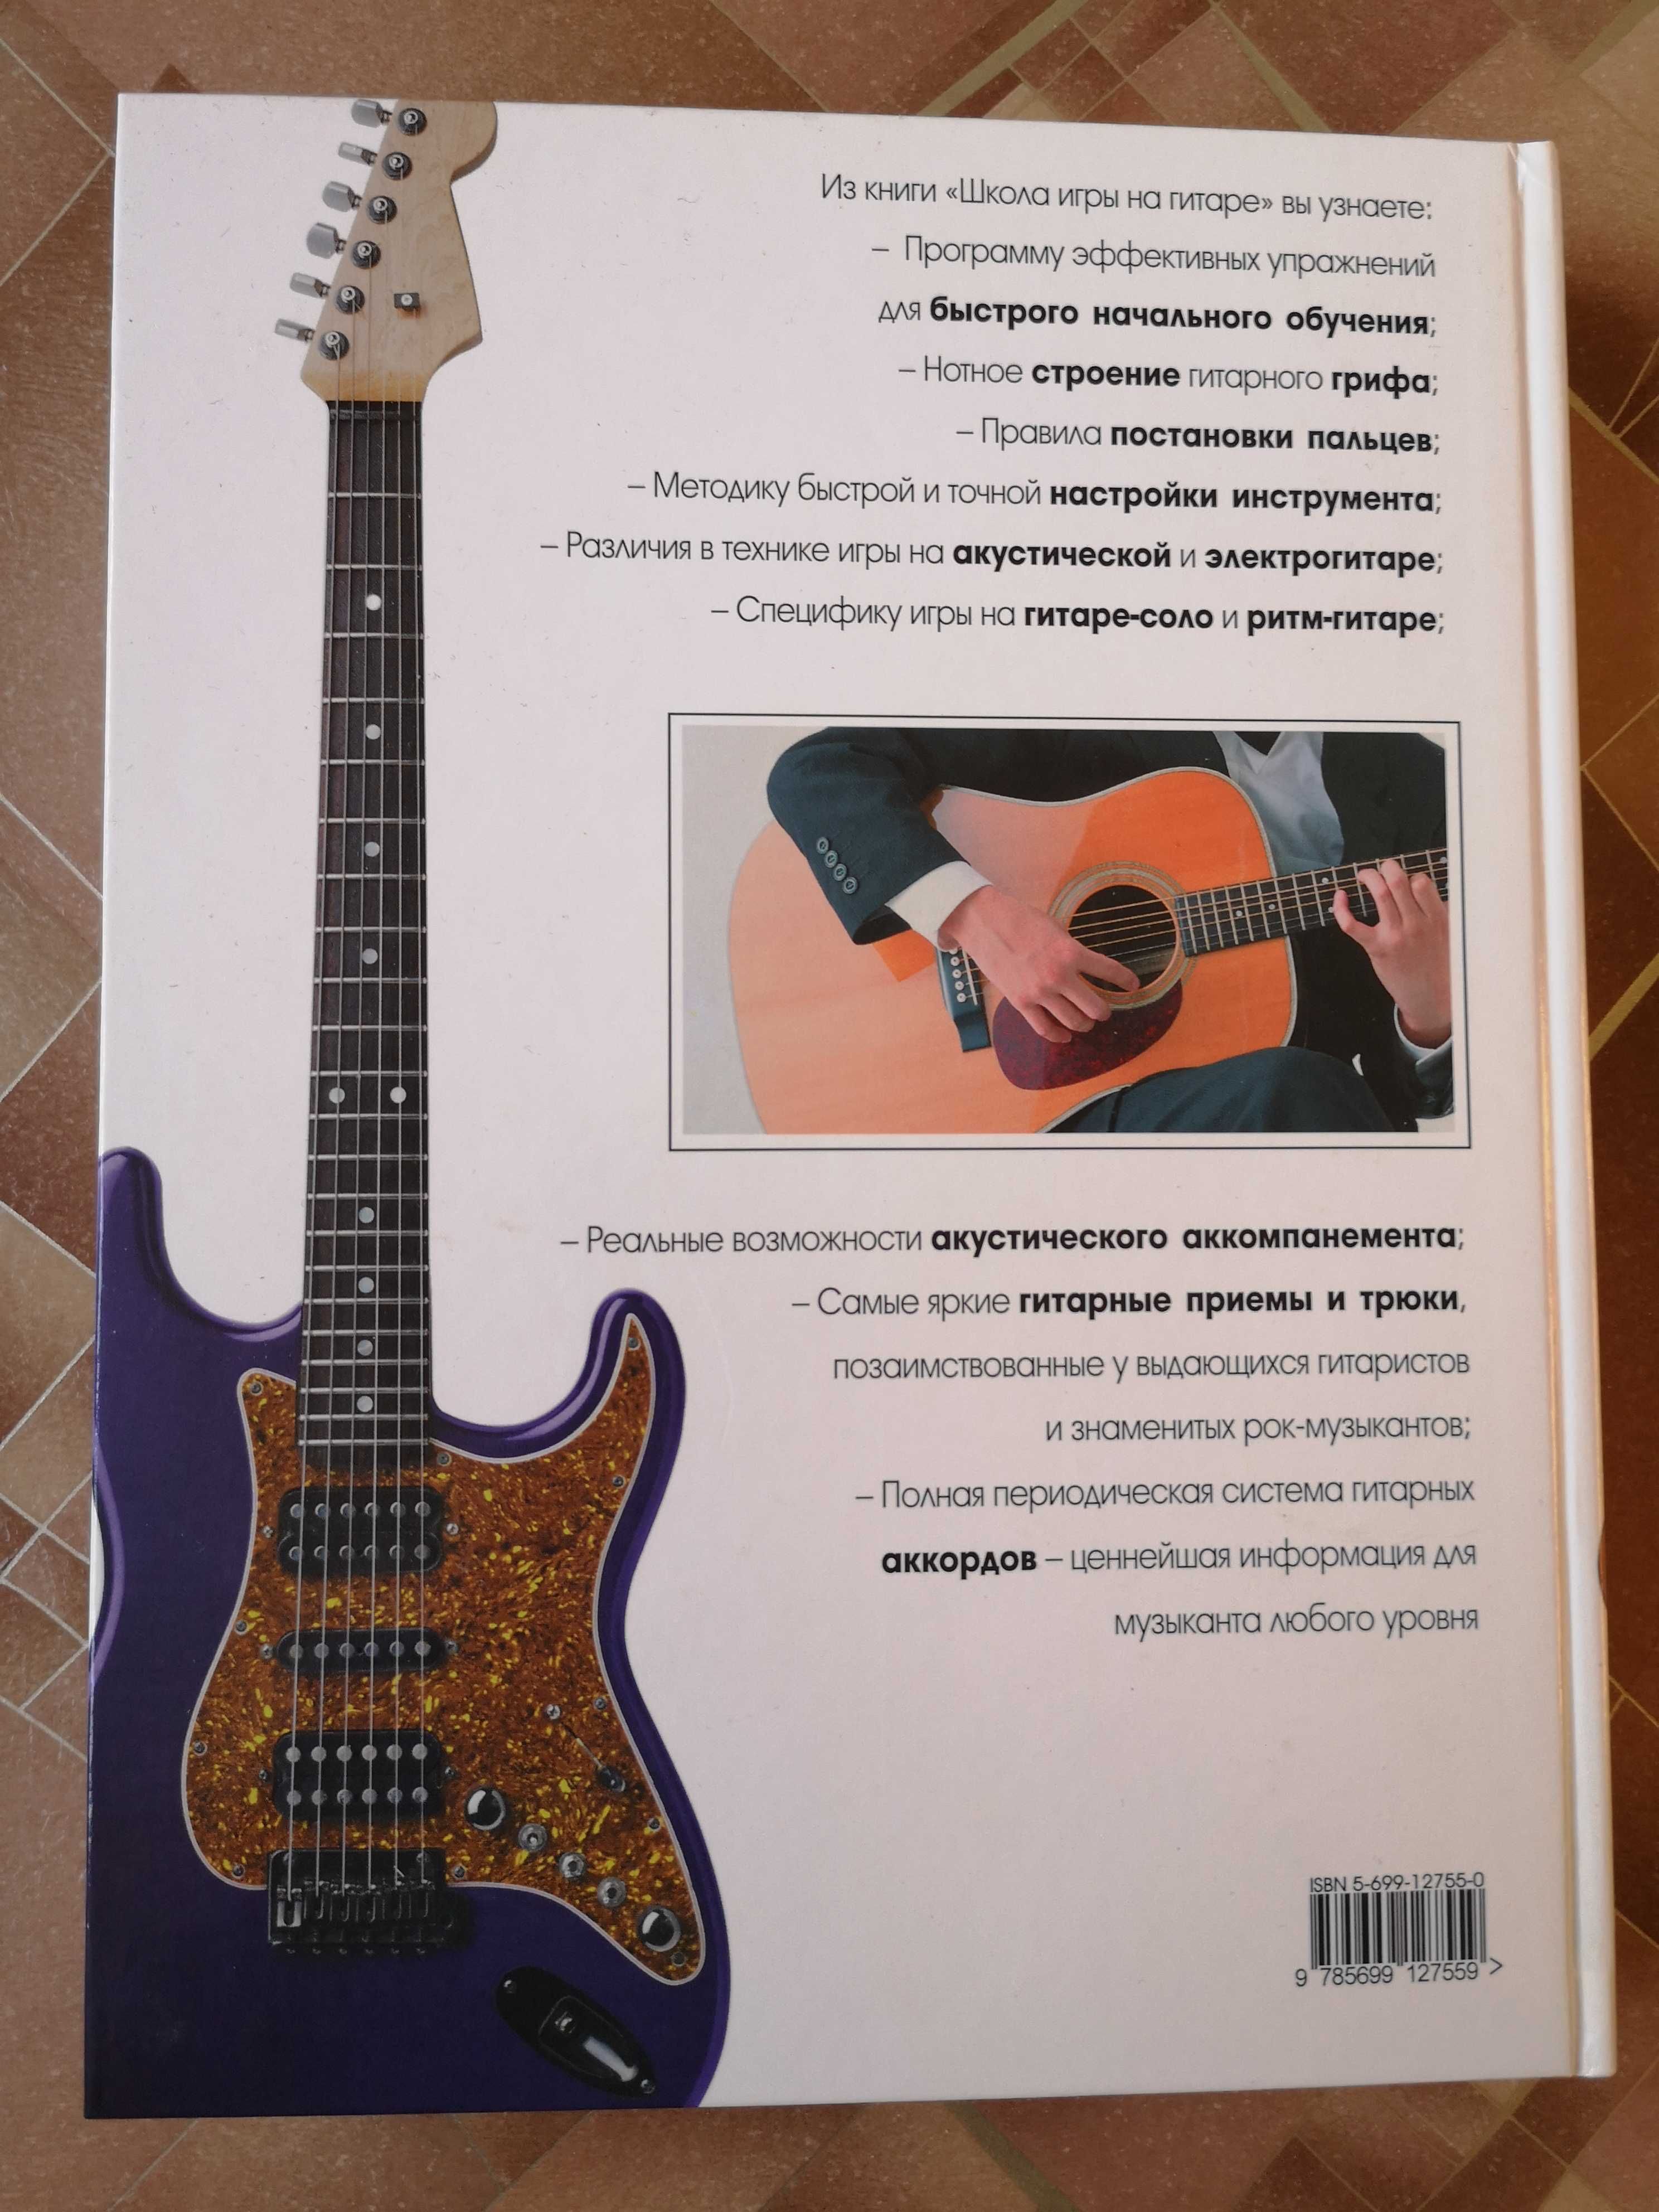 Самоучитель "Школа игры на гитаре" (2005 г.)